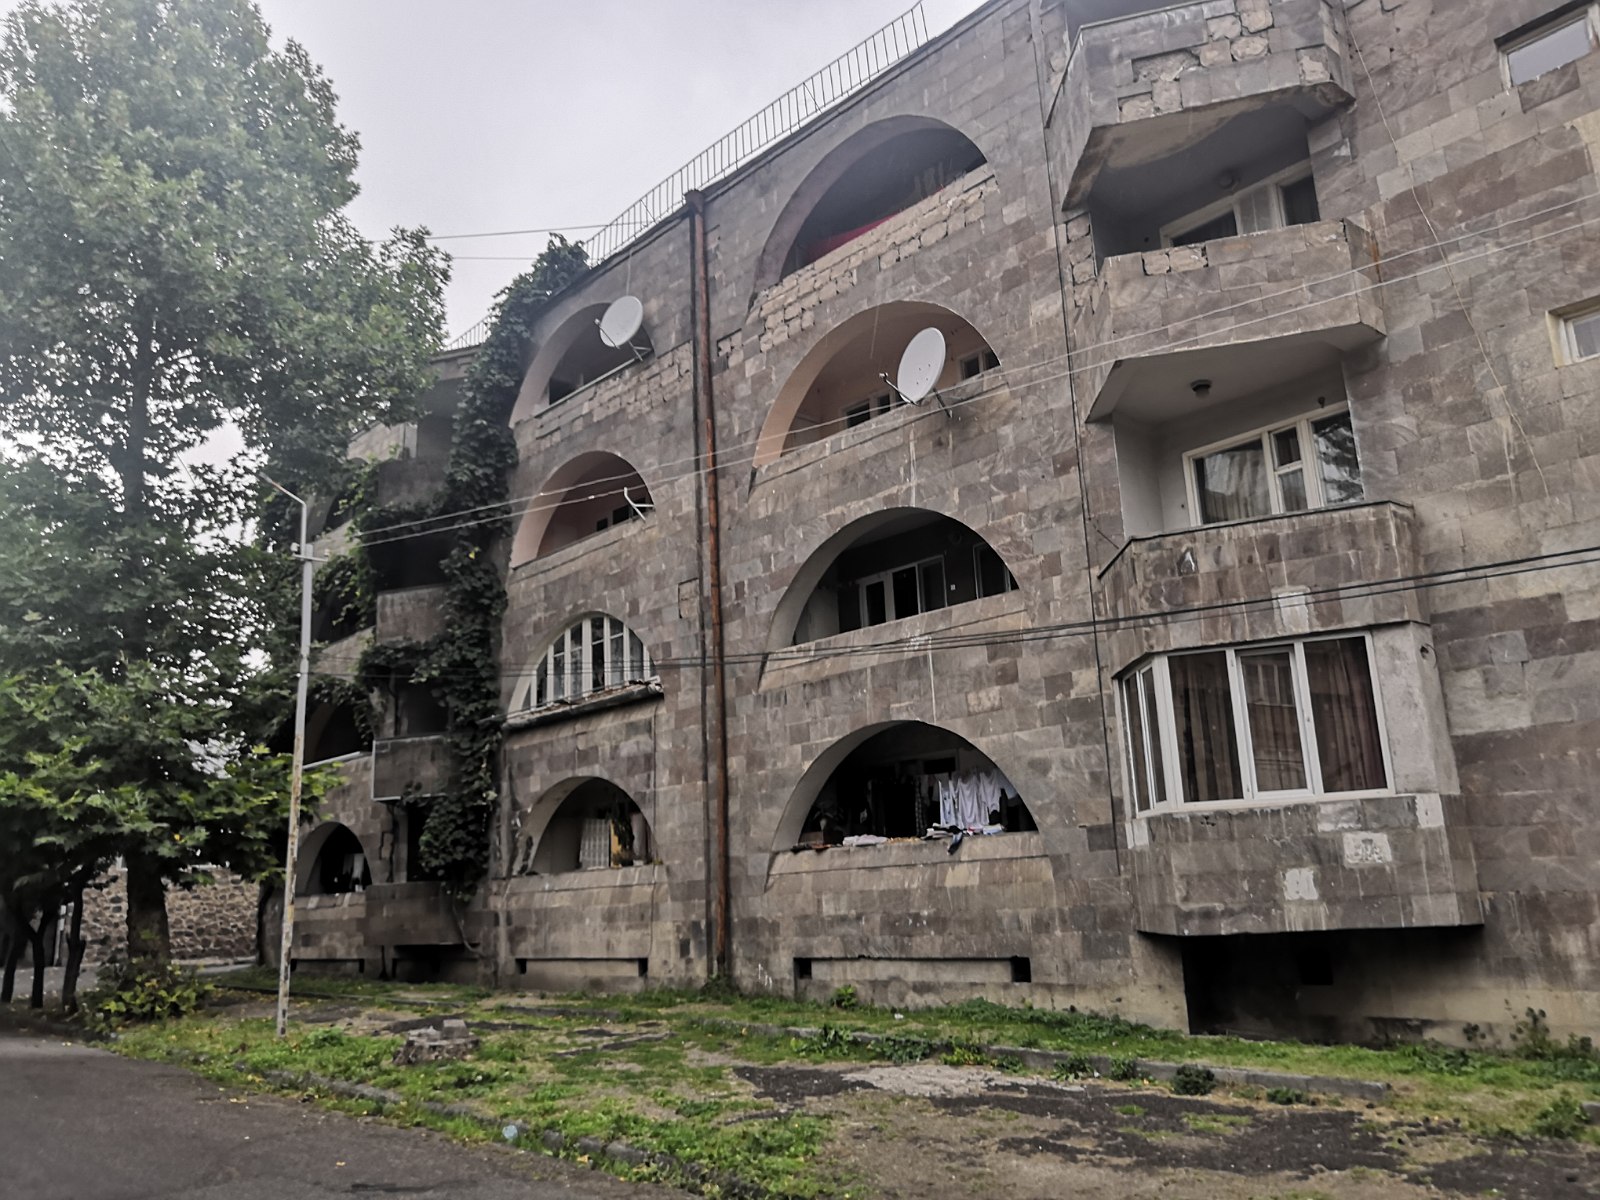 25. Balkony w miasteczku Goris w Armenii.